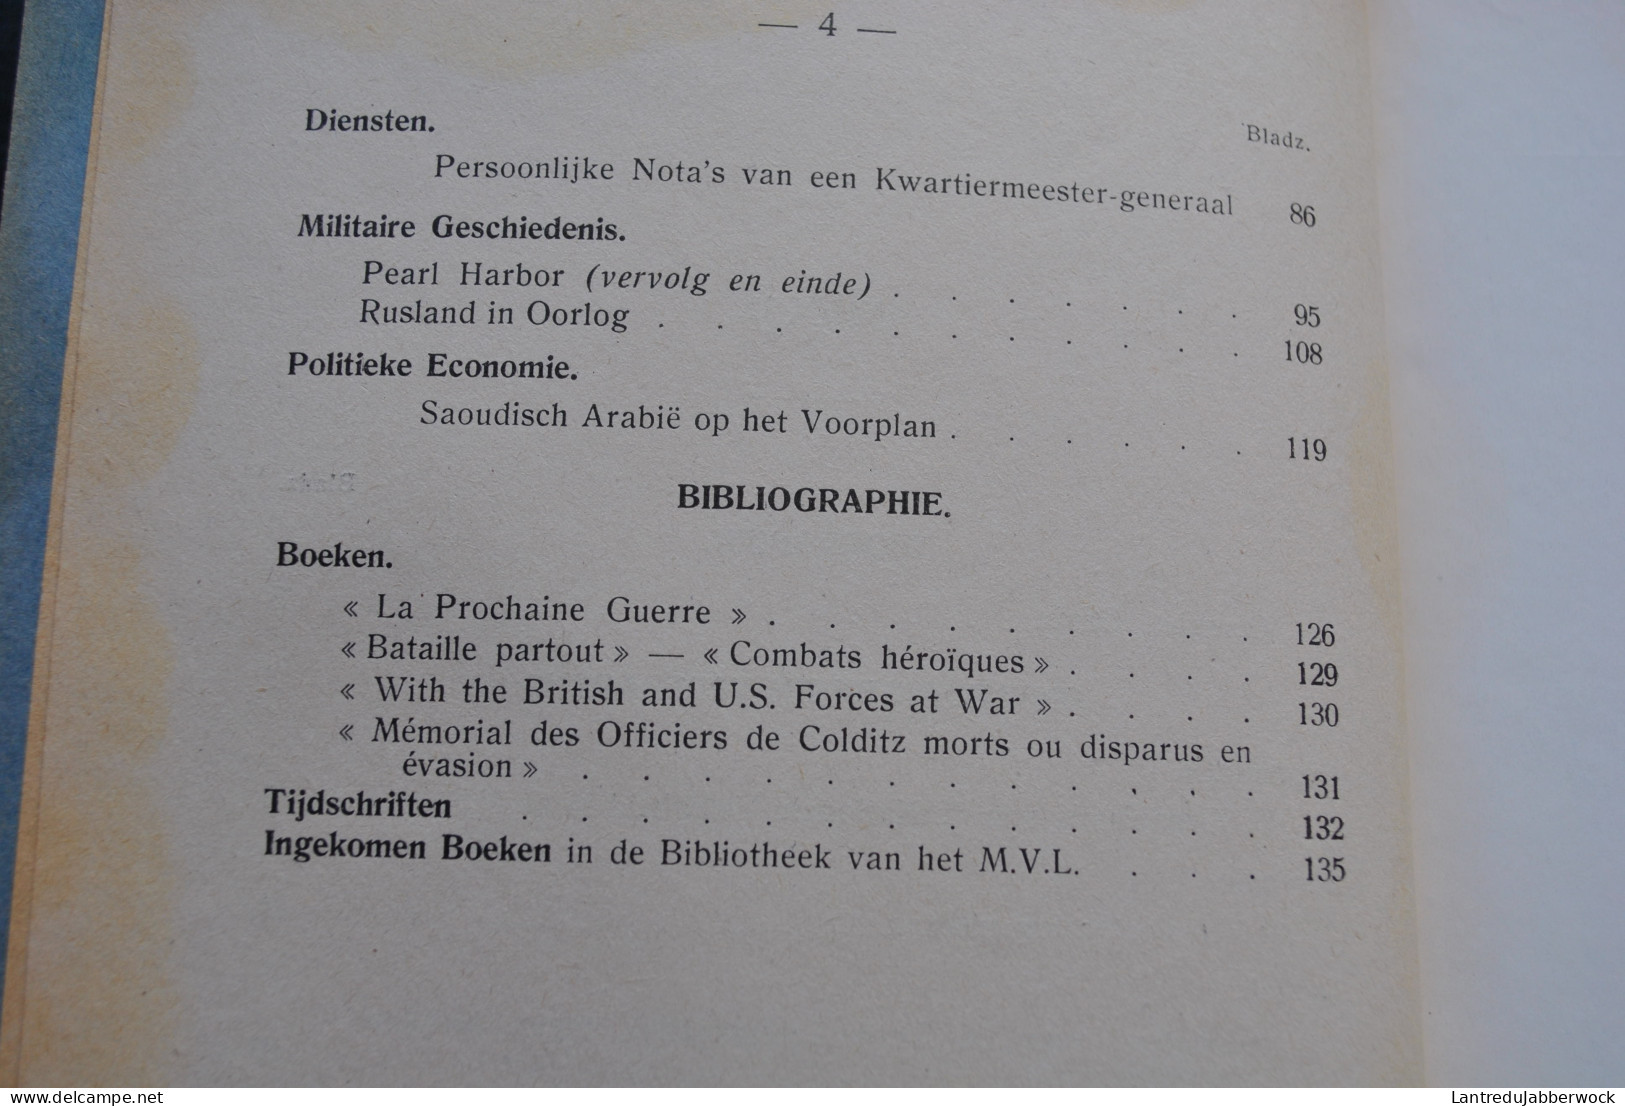 Revue de documentation militaire n°25 1949 Stratégie Artillerie Aviation Marine infanterie rockets Troupes aéroportées